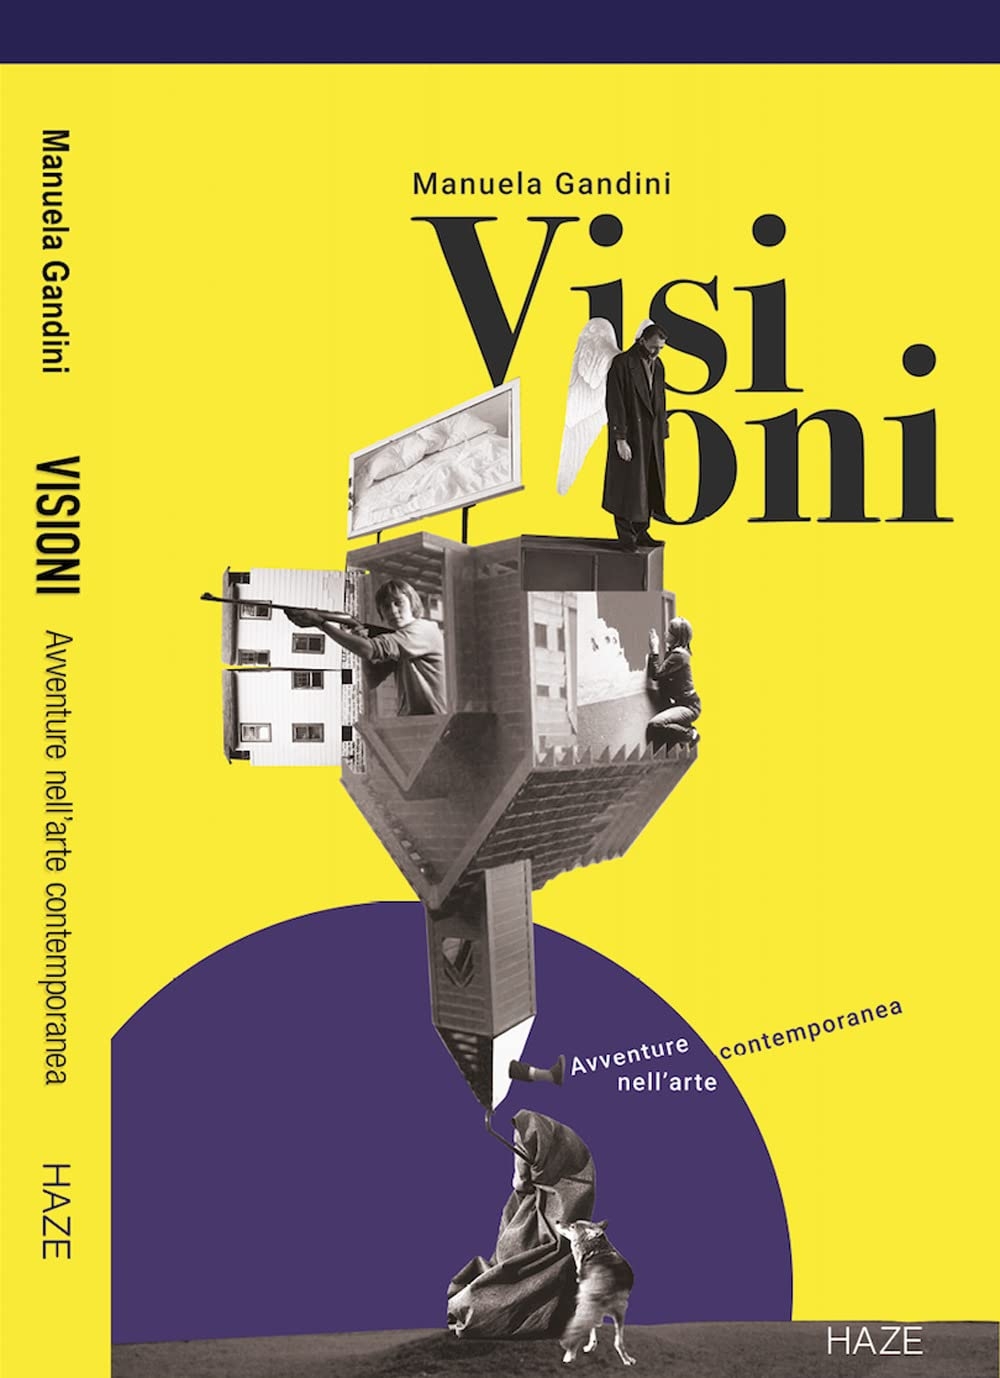 Manuela Gandini – Visioni. Avventure nell'arte contemporanea (Haze, Milano 2022)